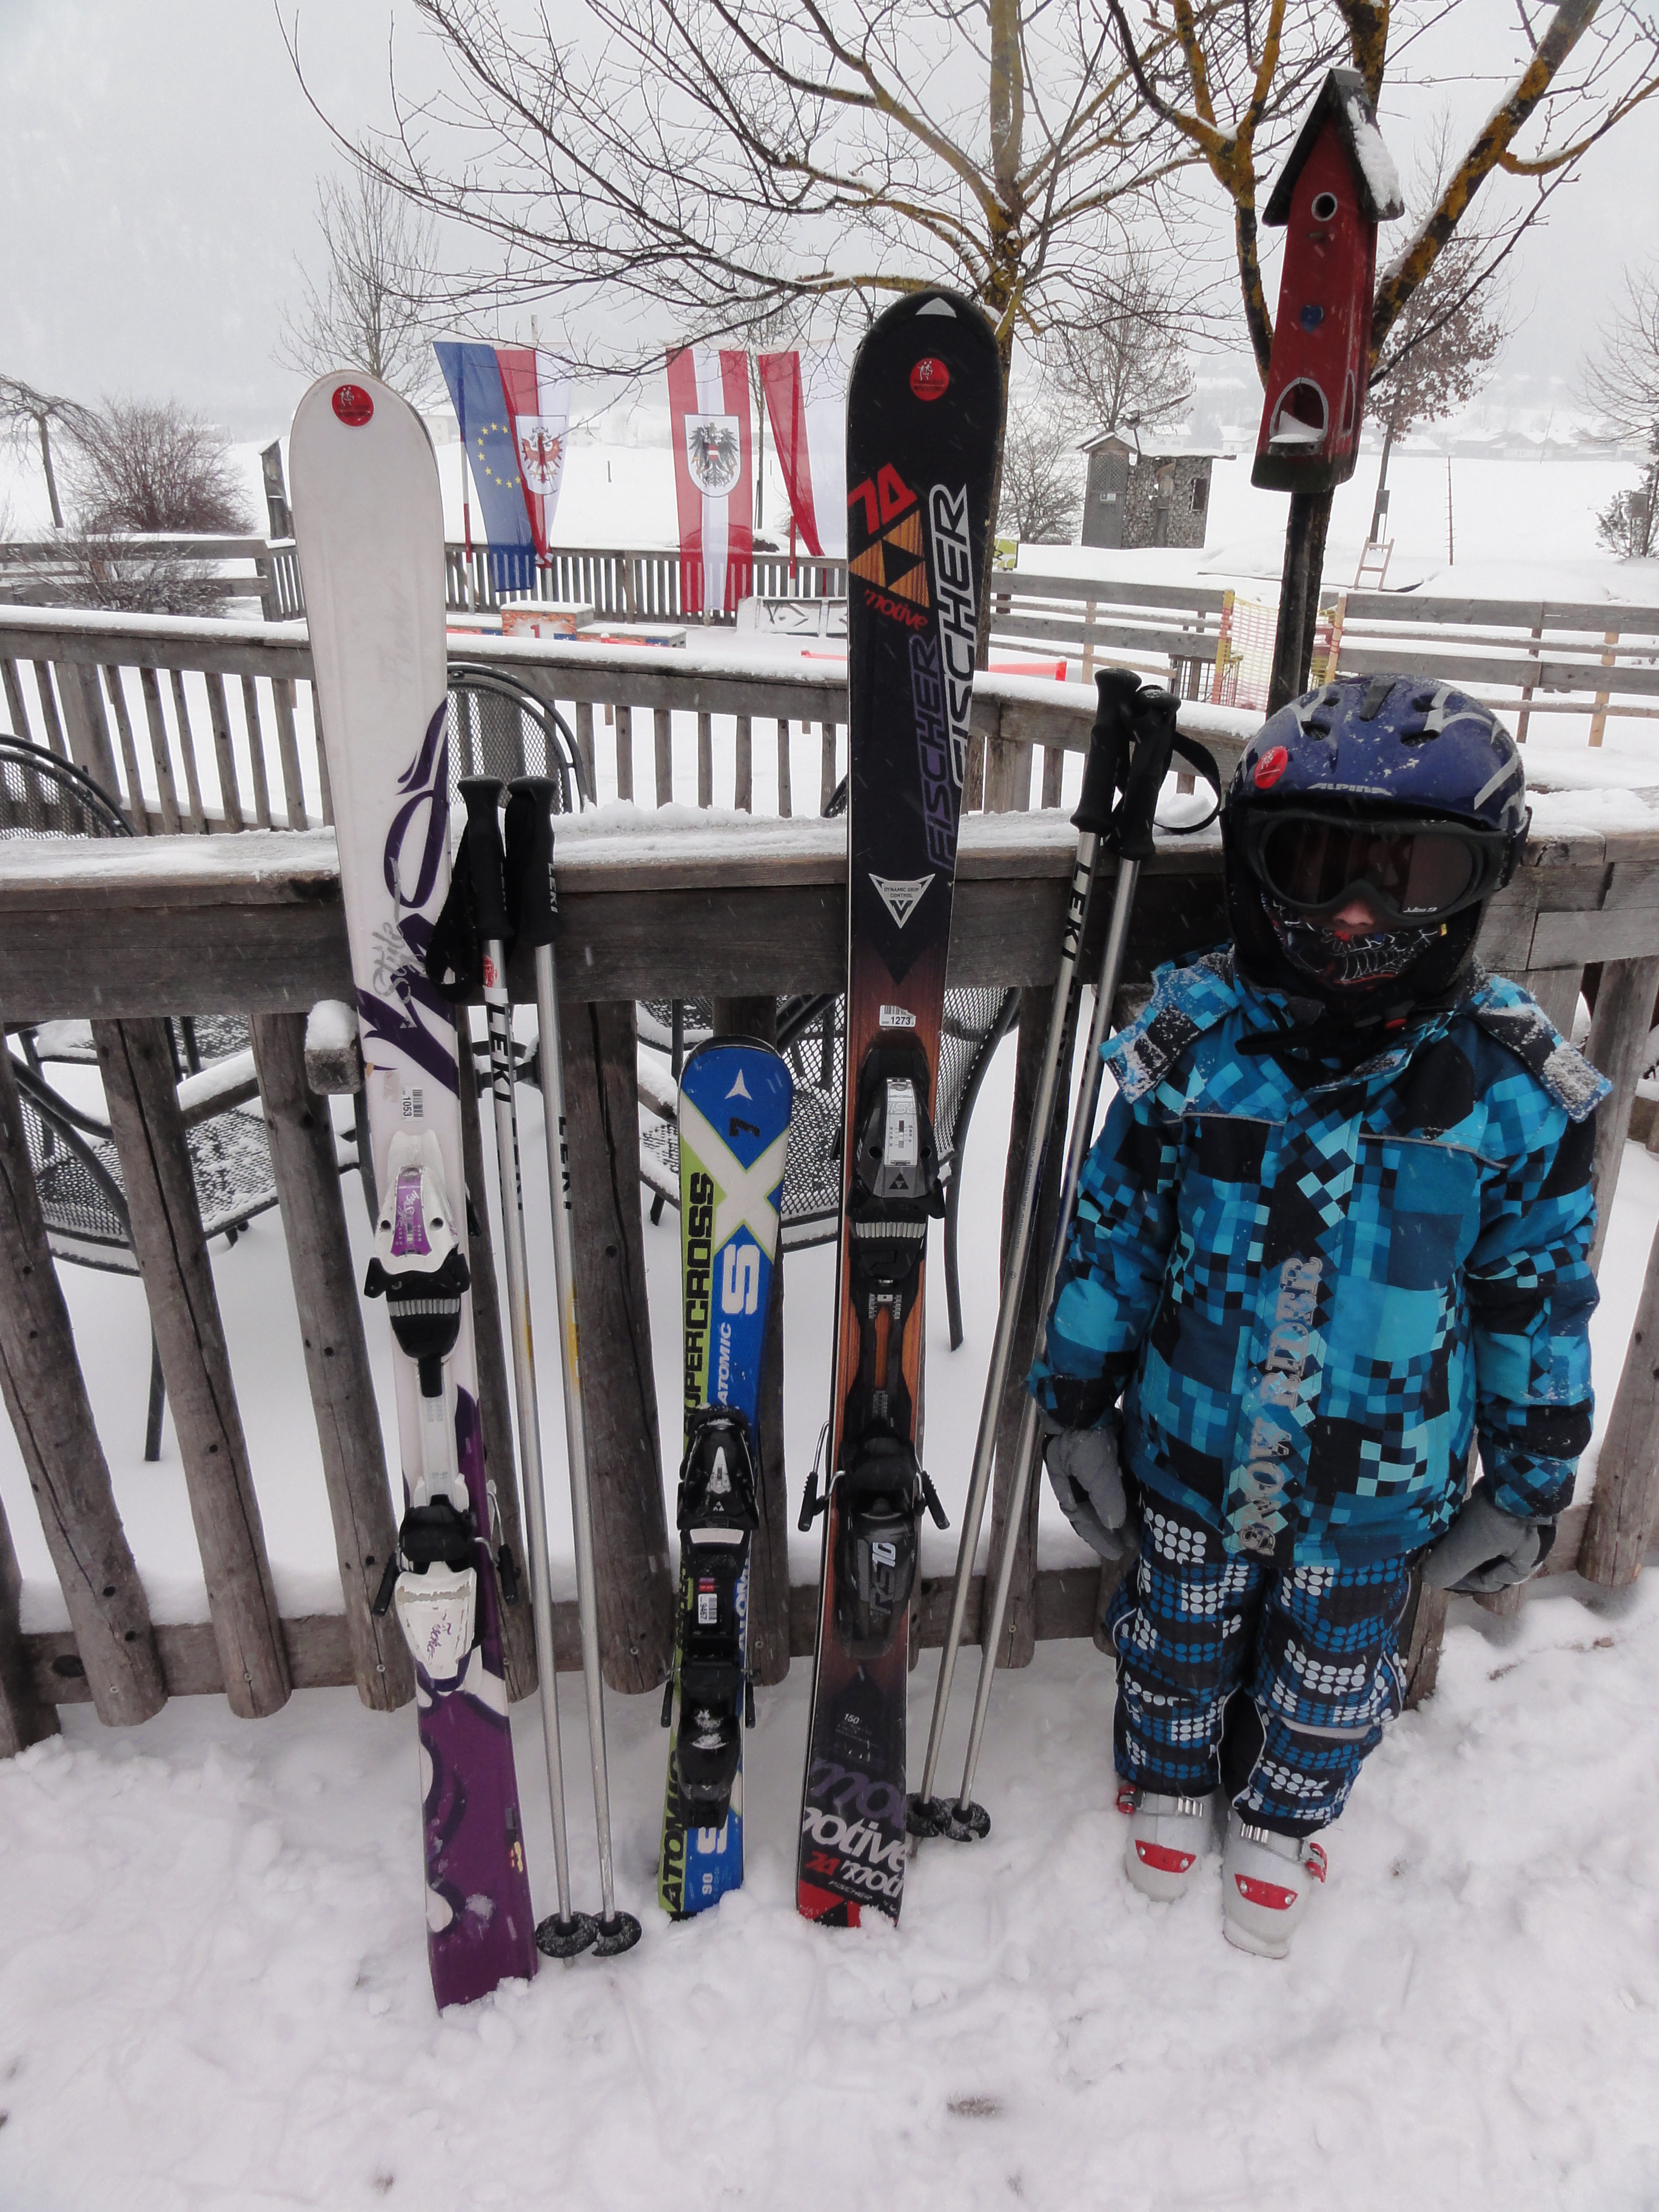 Bereit für die Skischule